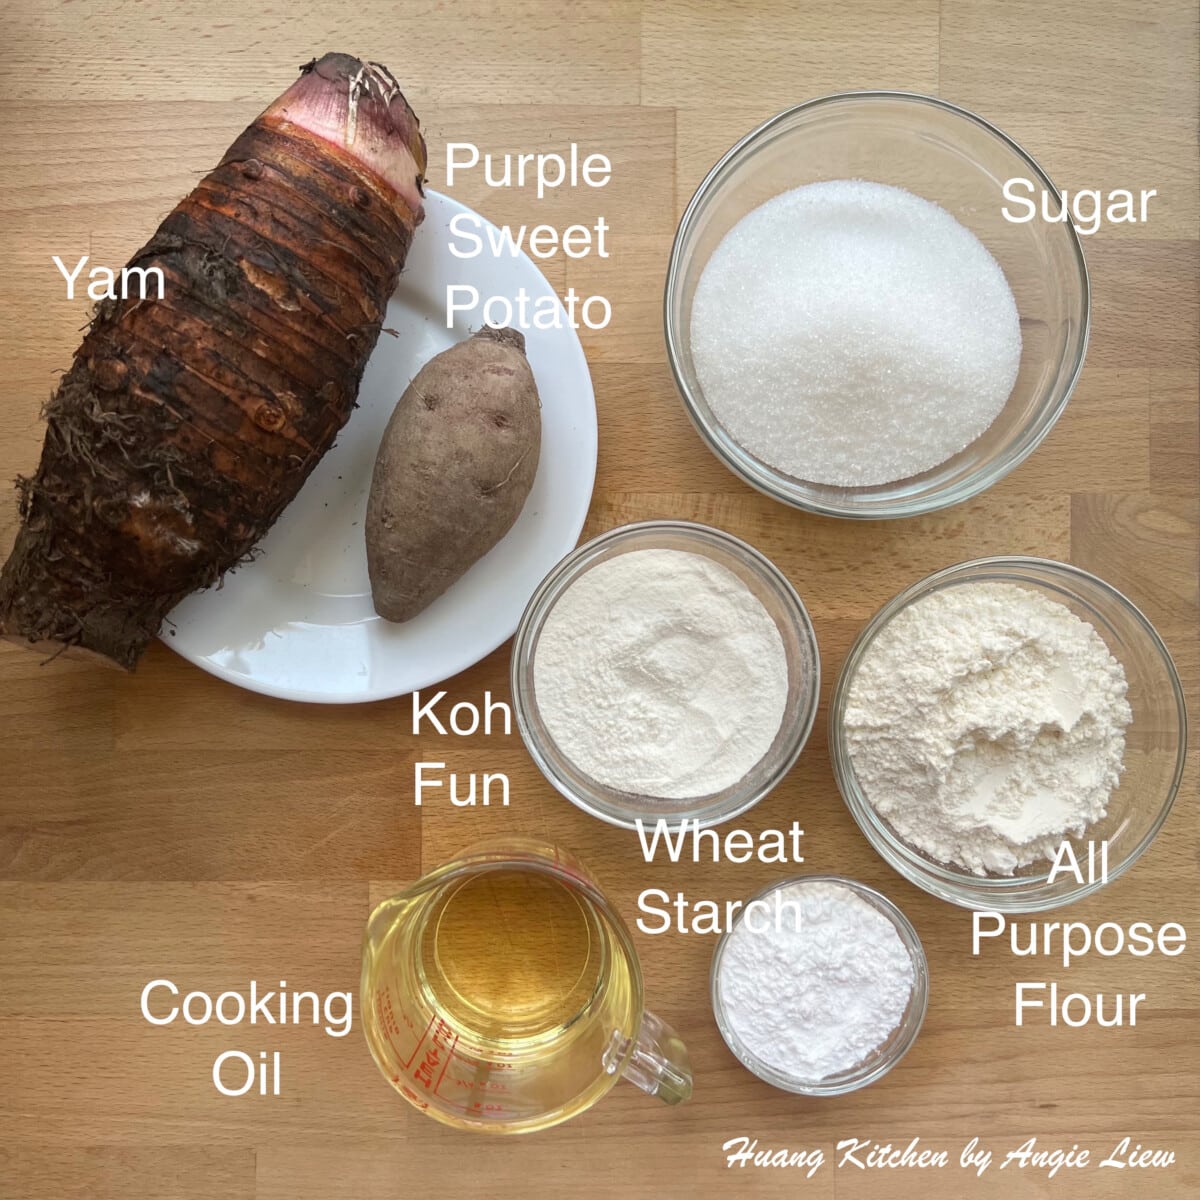 Ingredients to make Yam Paste